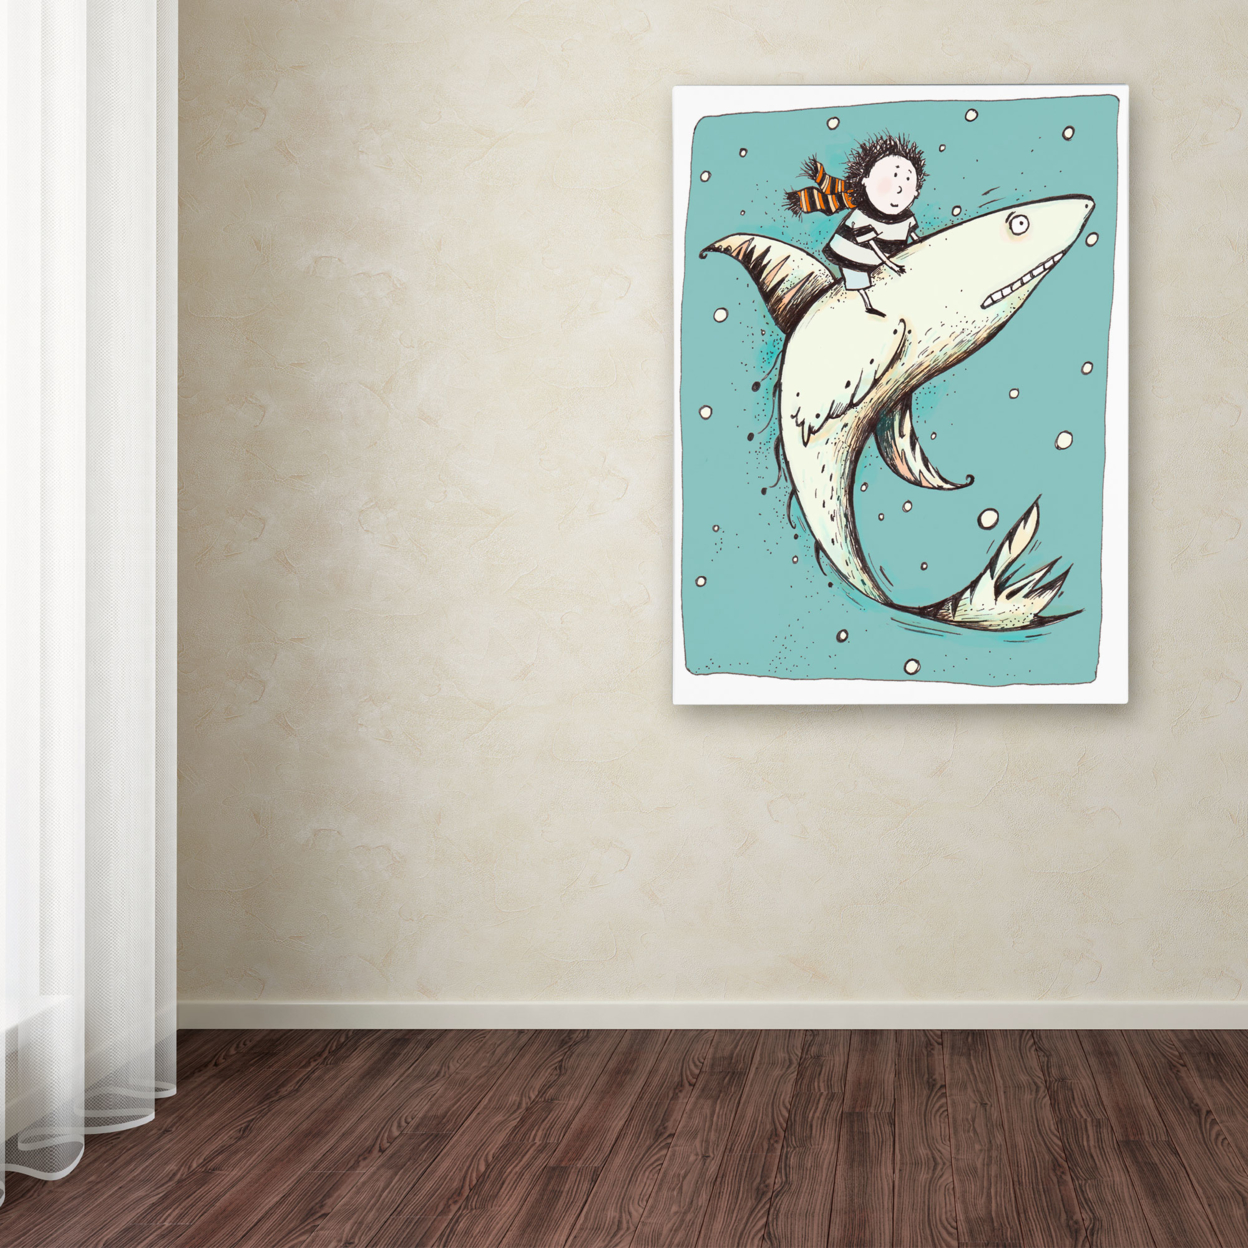 Carla Martell 'Fish Boy' Canvas Wall Art 35 X 47 Inches